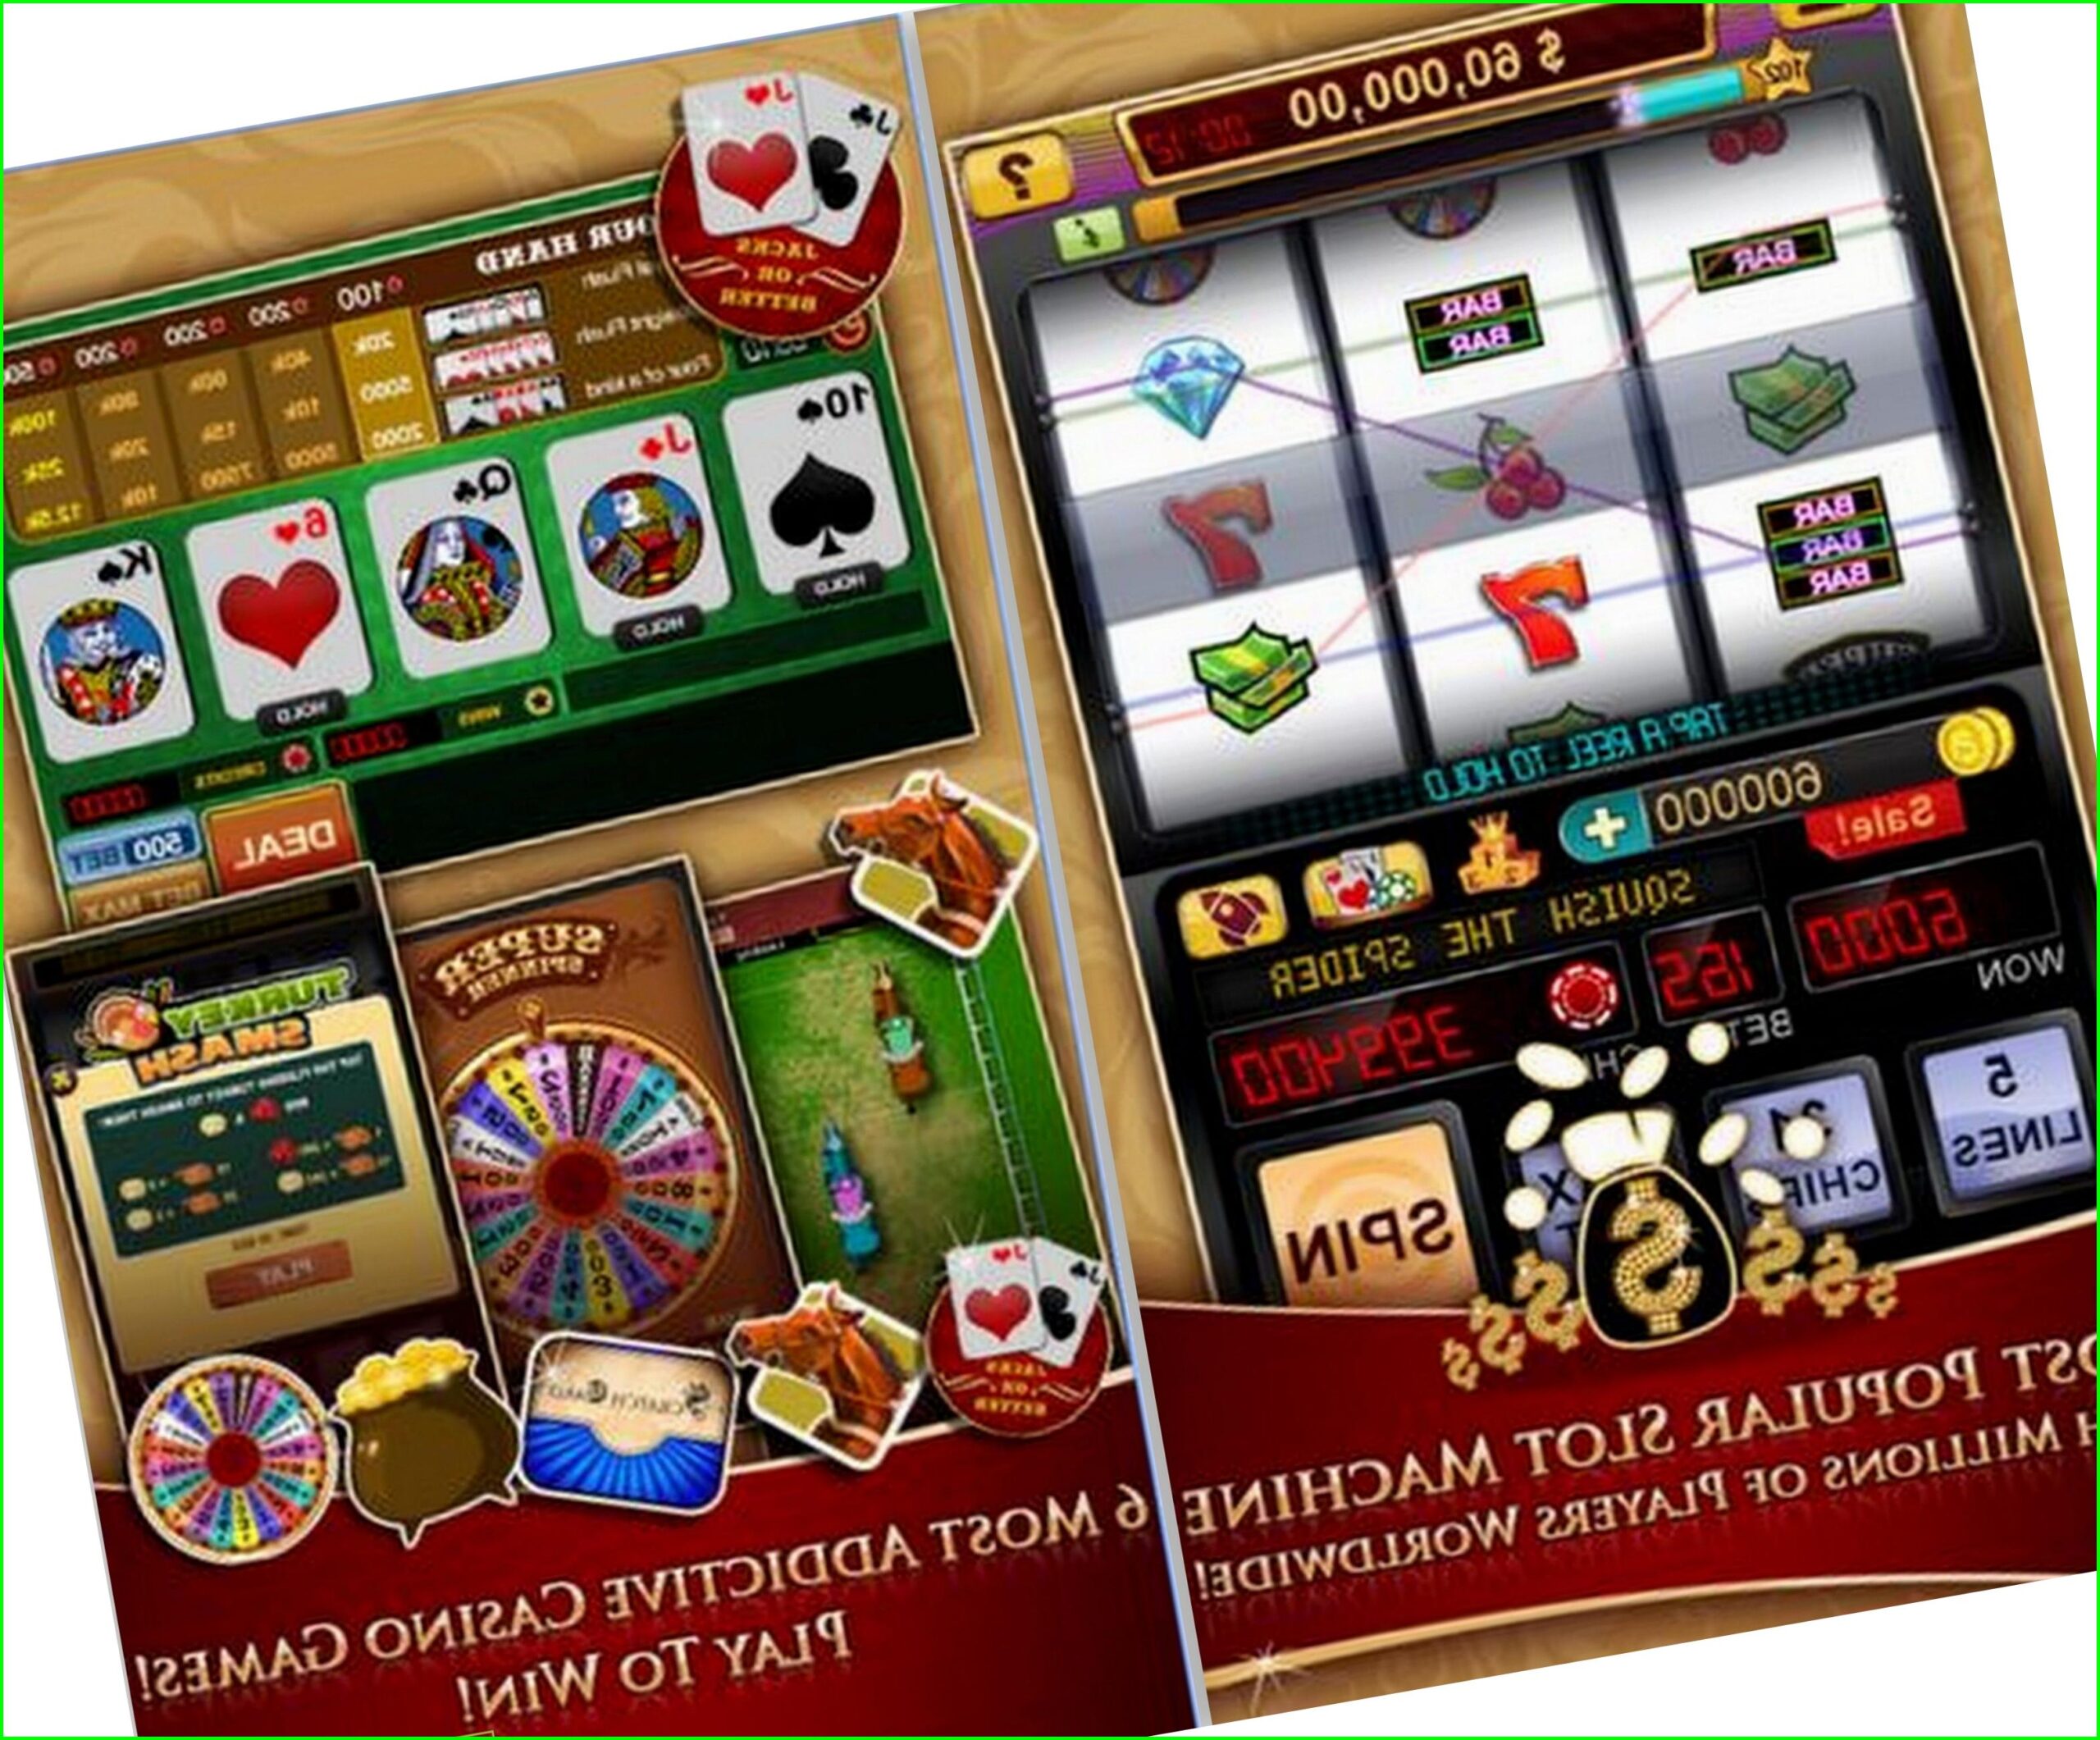 Casino online wiki горячая линия игровые автоматы екатеринбург